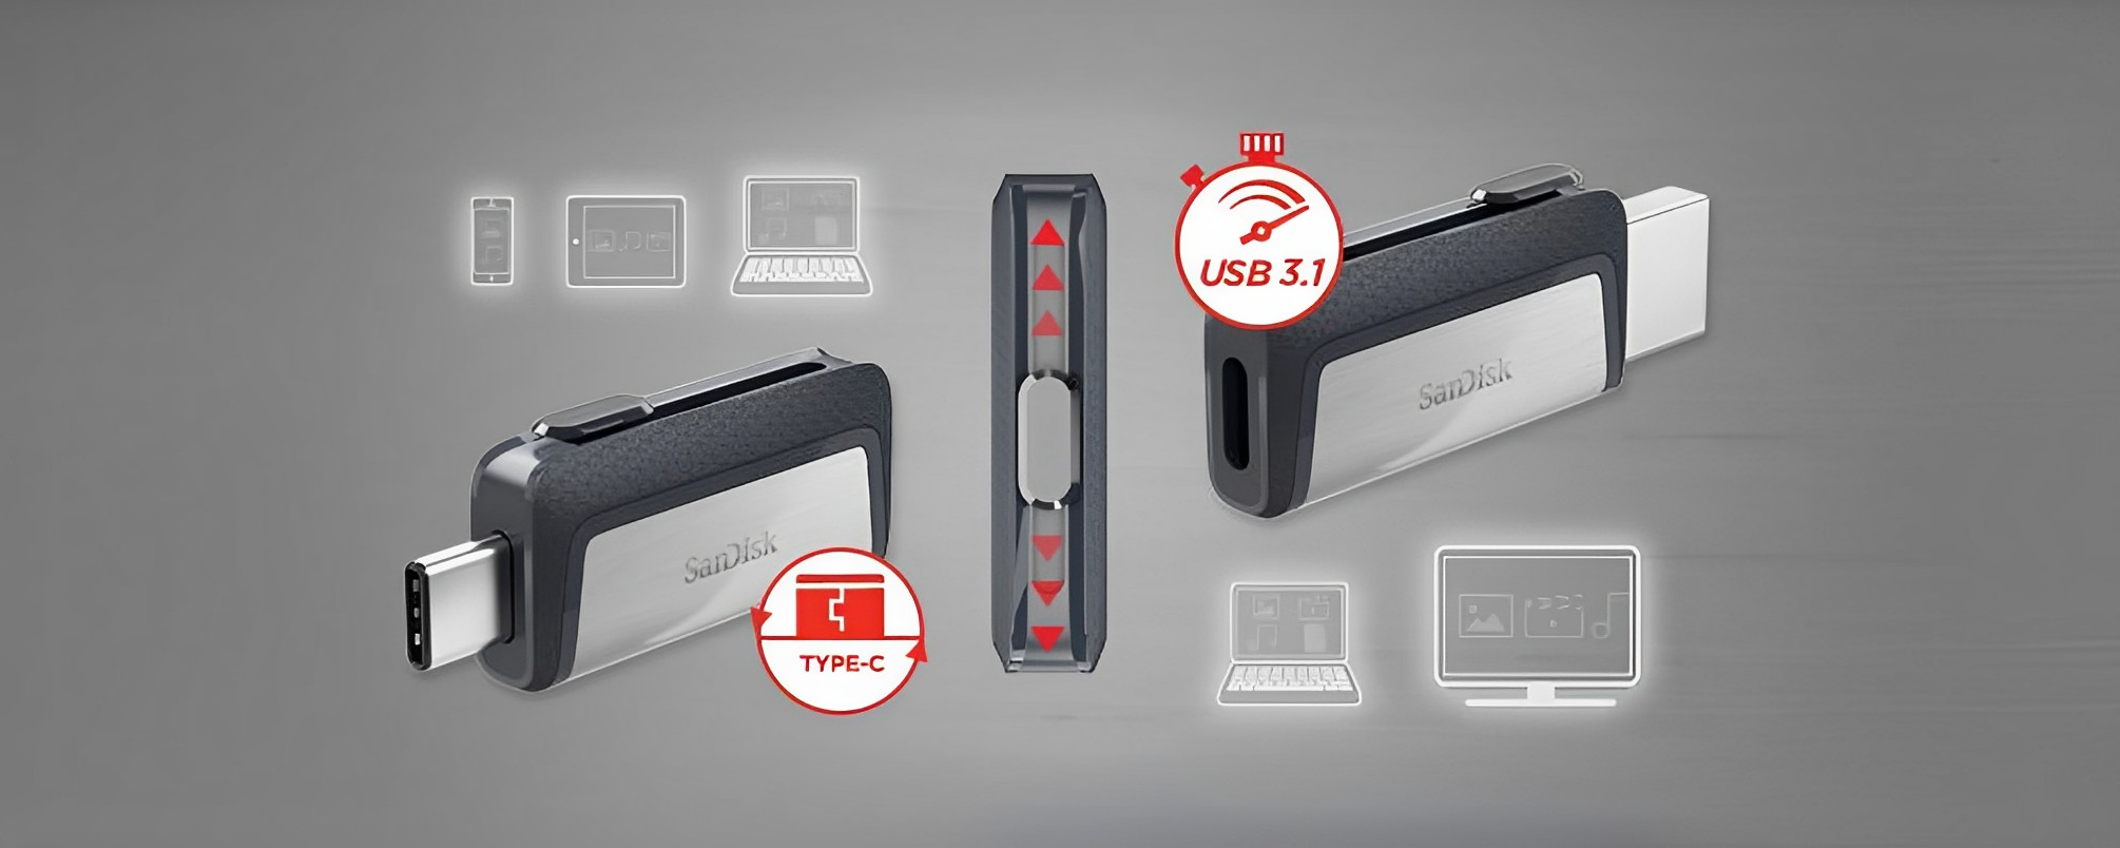 Chiavetta USB 128GB con 2 uscite: compatibilità universale (19€)